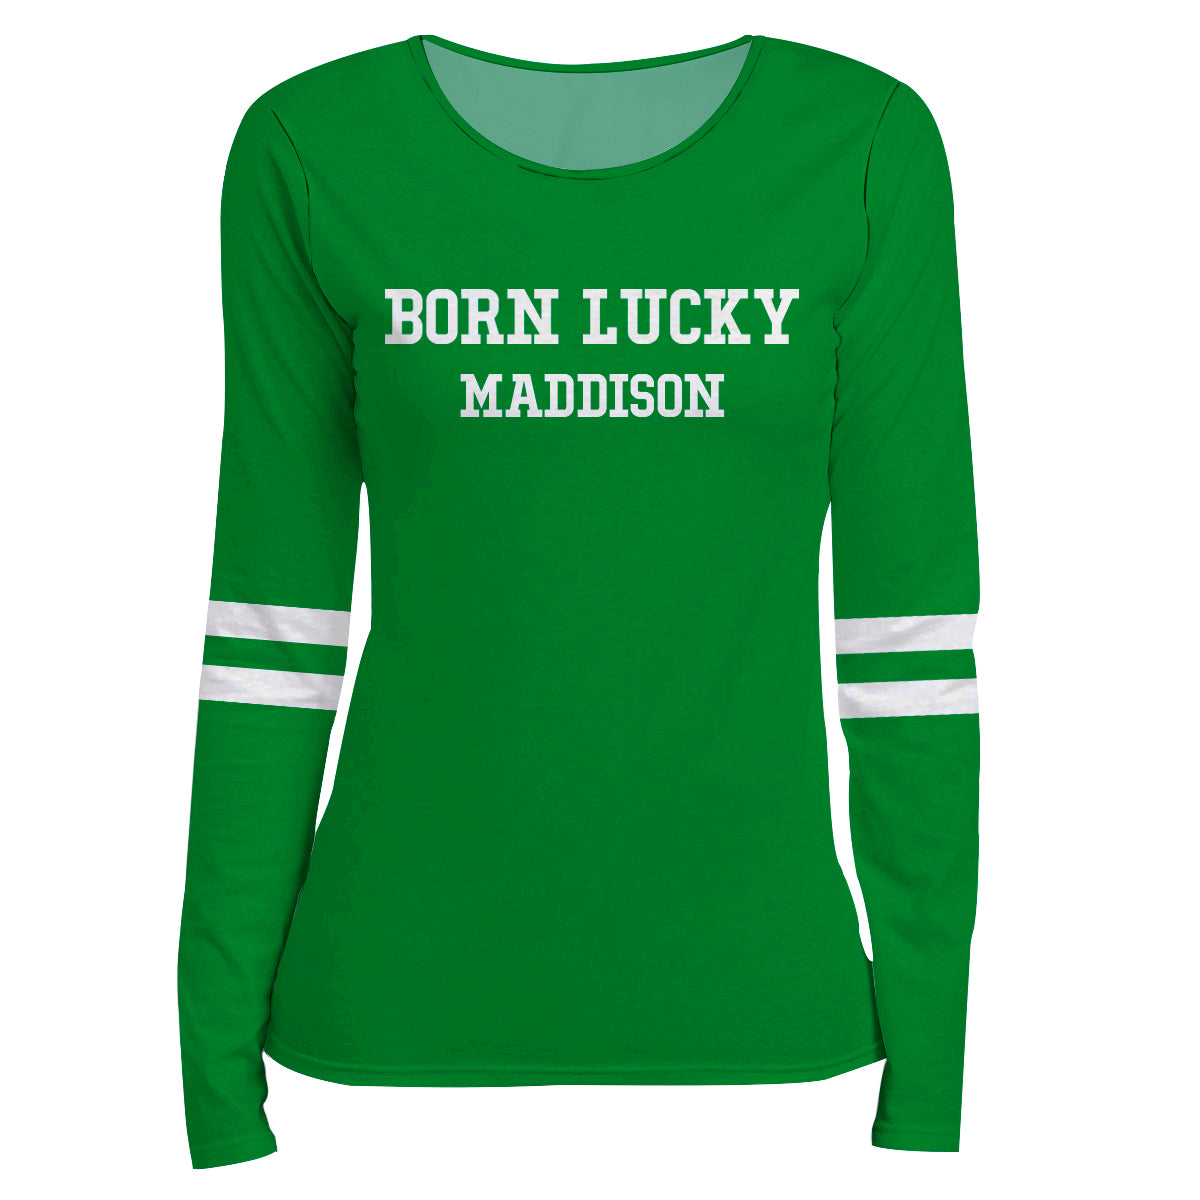 Born Lucky Name Green Long Sleeve Tee Shirt - Wimziy&Co.